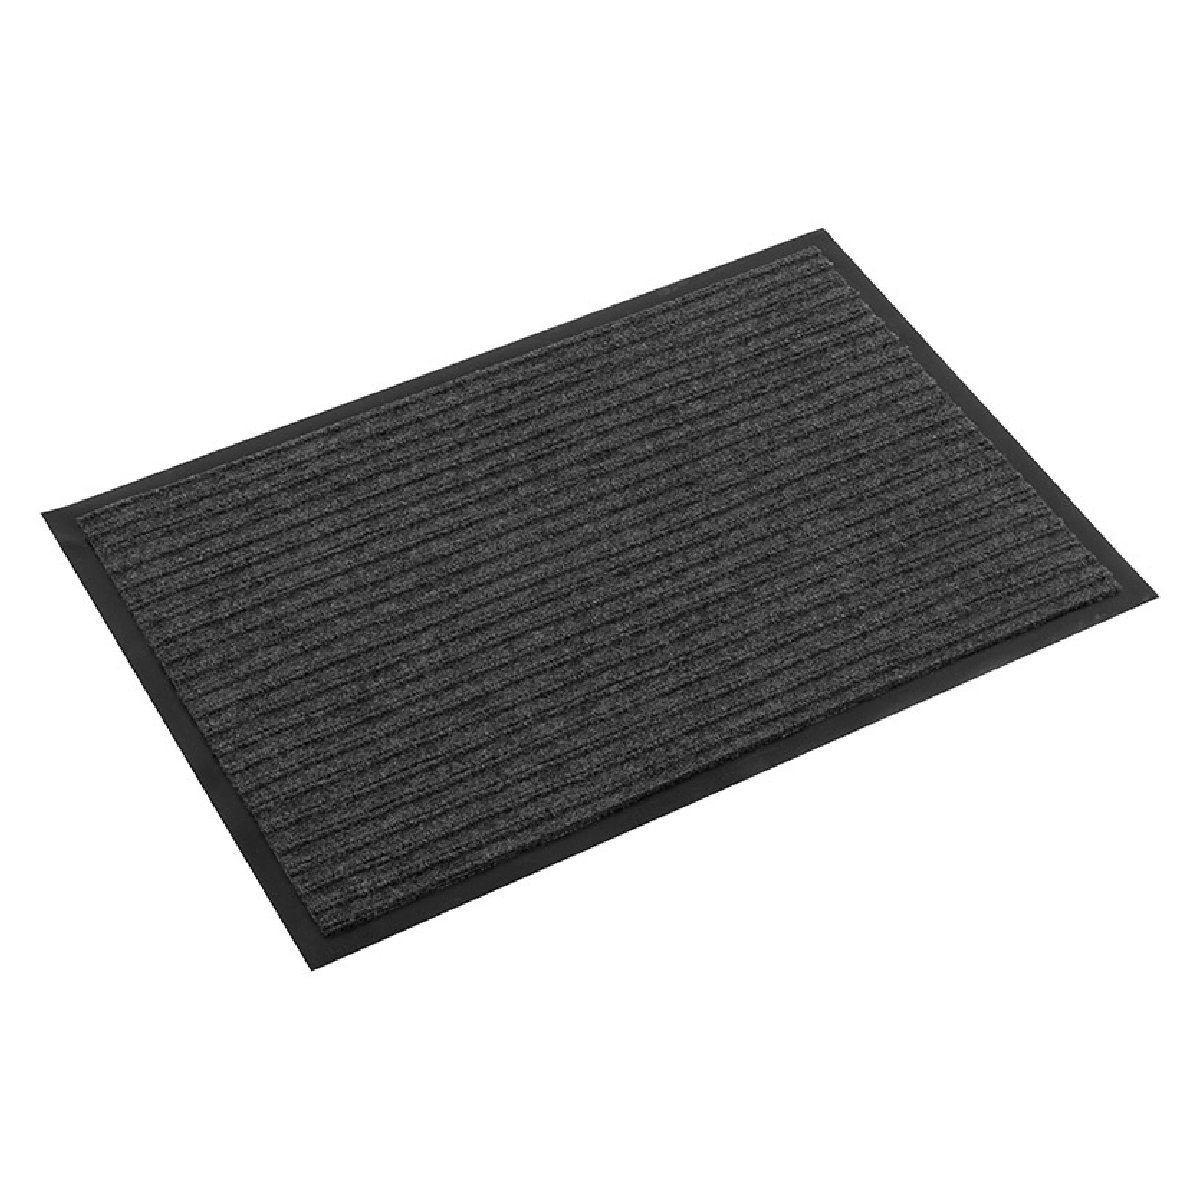 Придверный коврик, полиэстер, 40x60 см, серый (008603)Купить